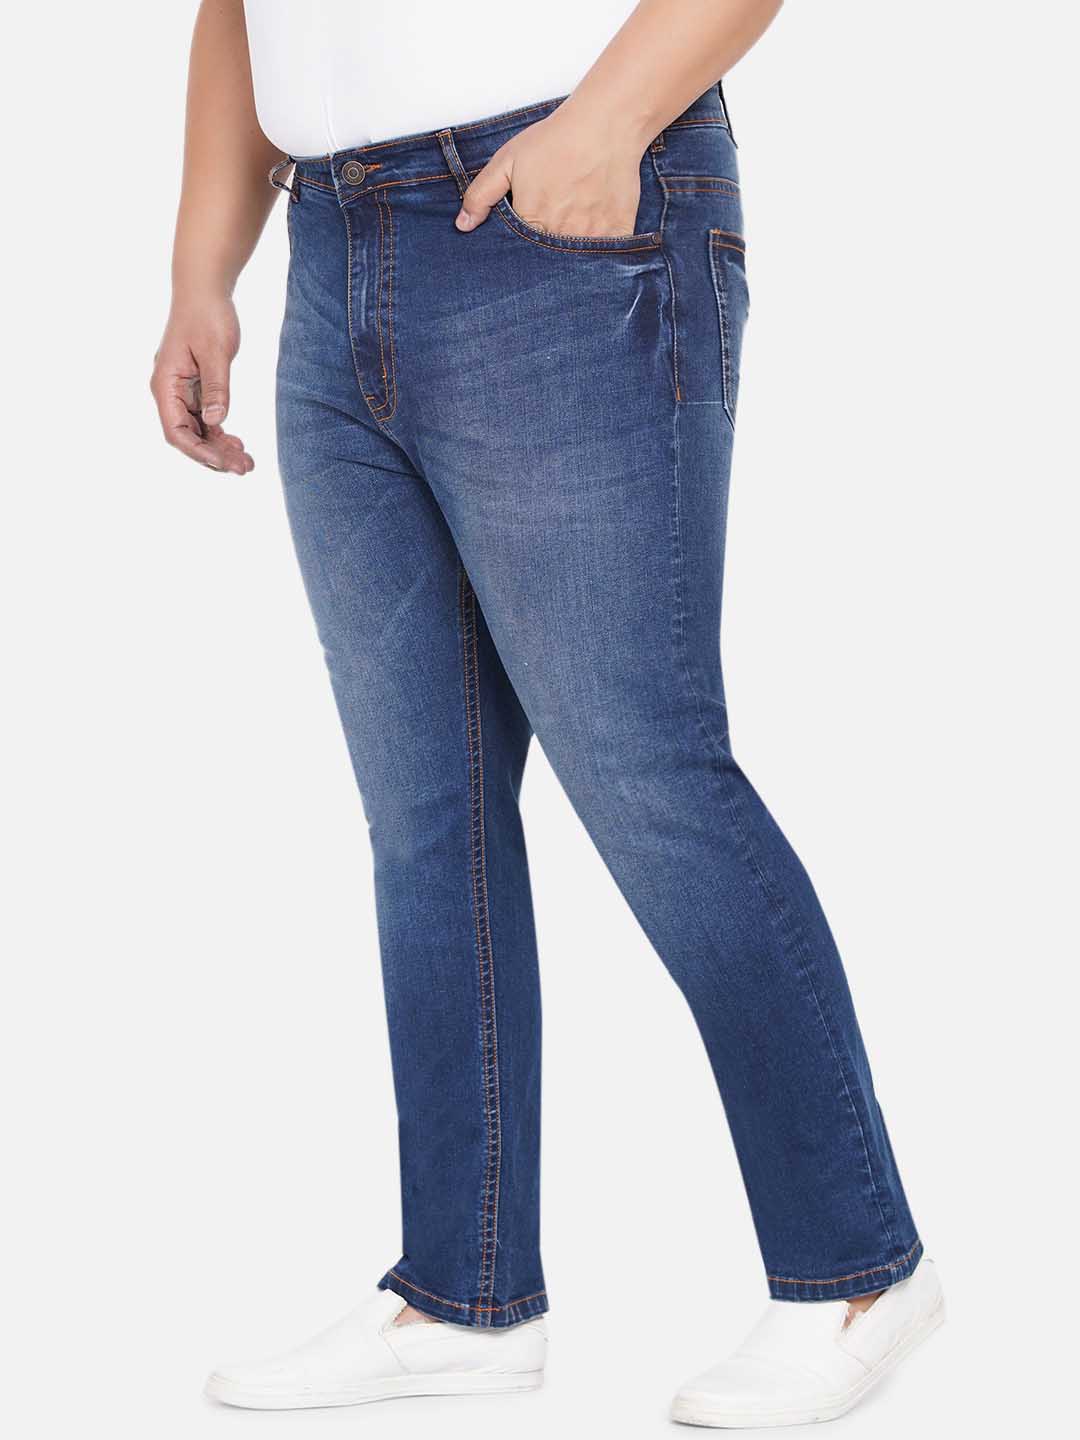 bottomwear/jeans/JPJ12238/jpj12238-4.jpg